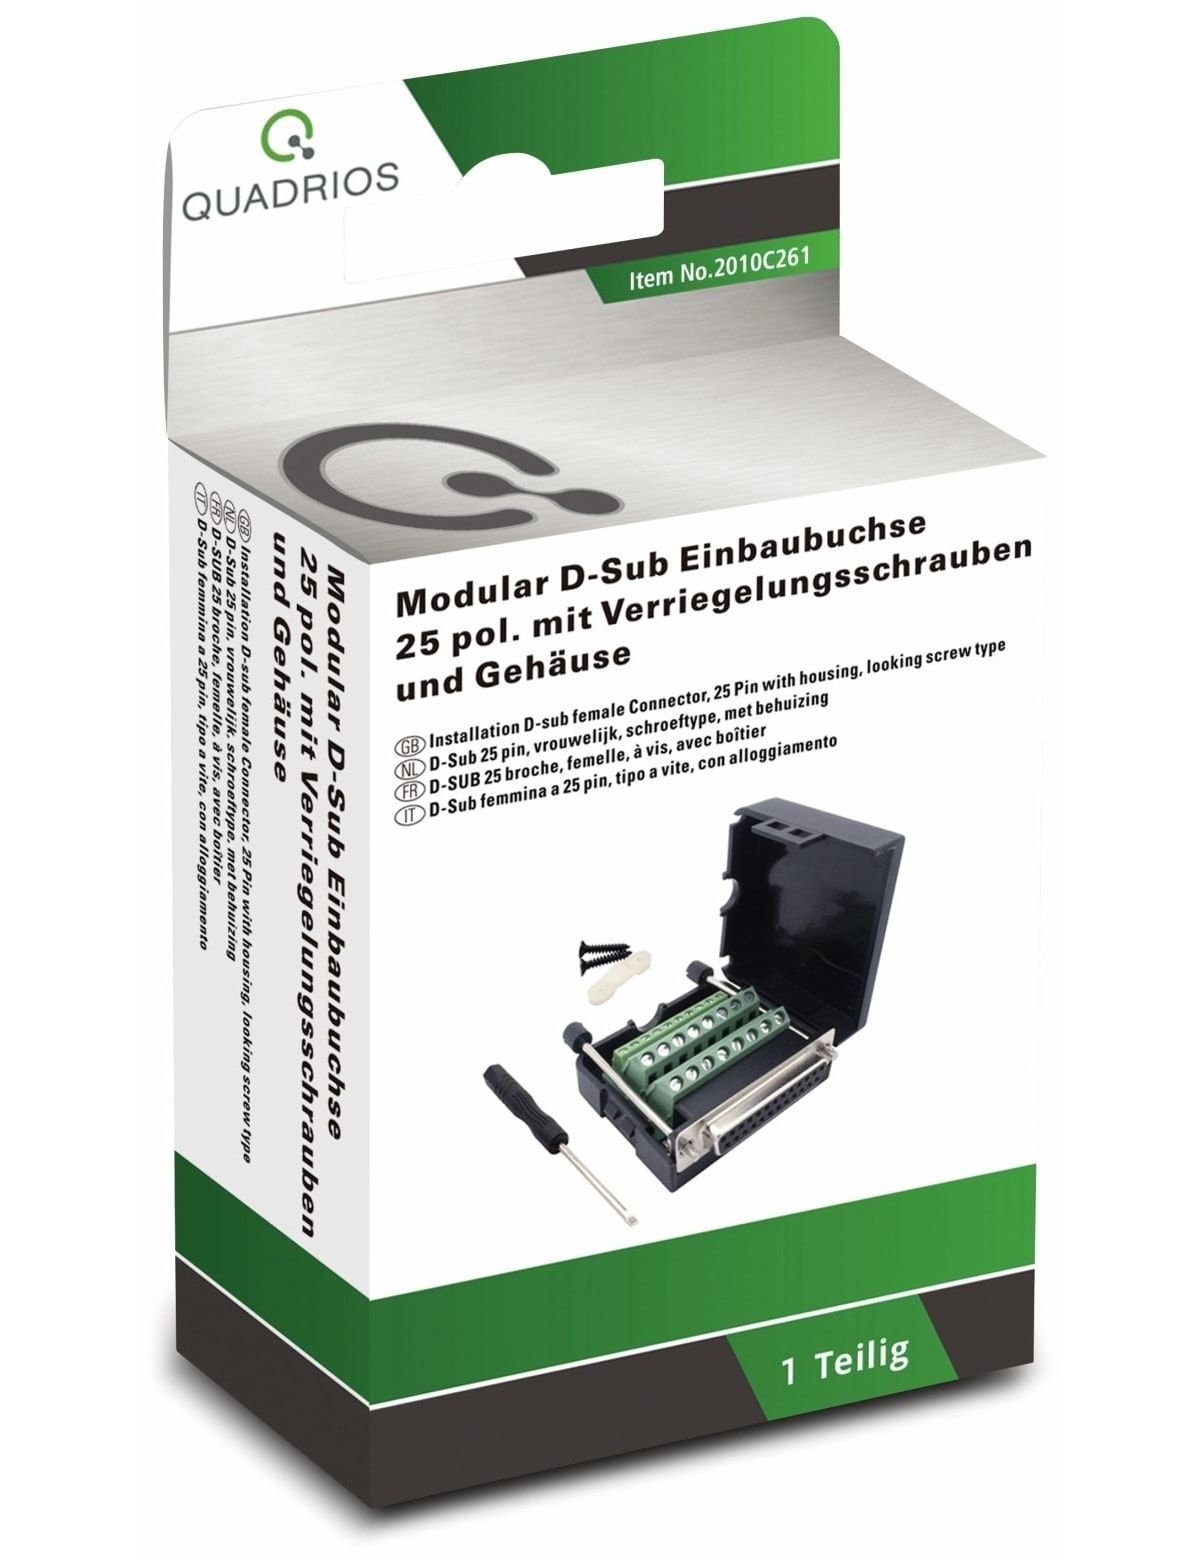 Quadrios USB-Modular-Set, 2010C261, QUADRIOS, Klemmen D-Sub